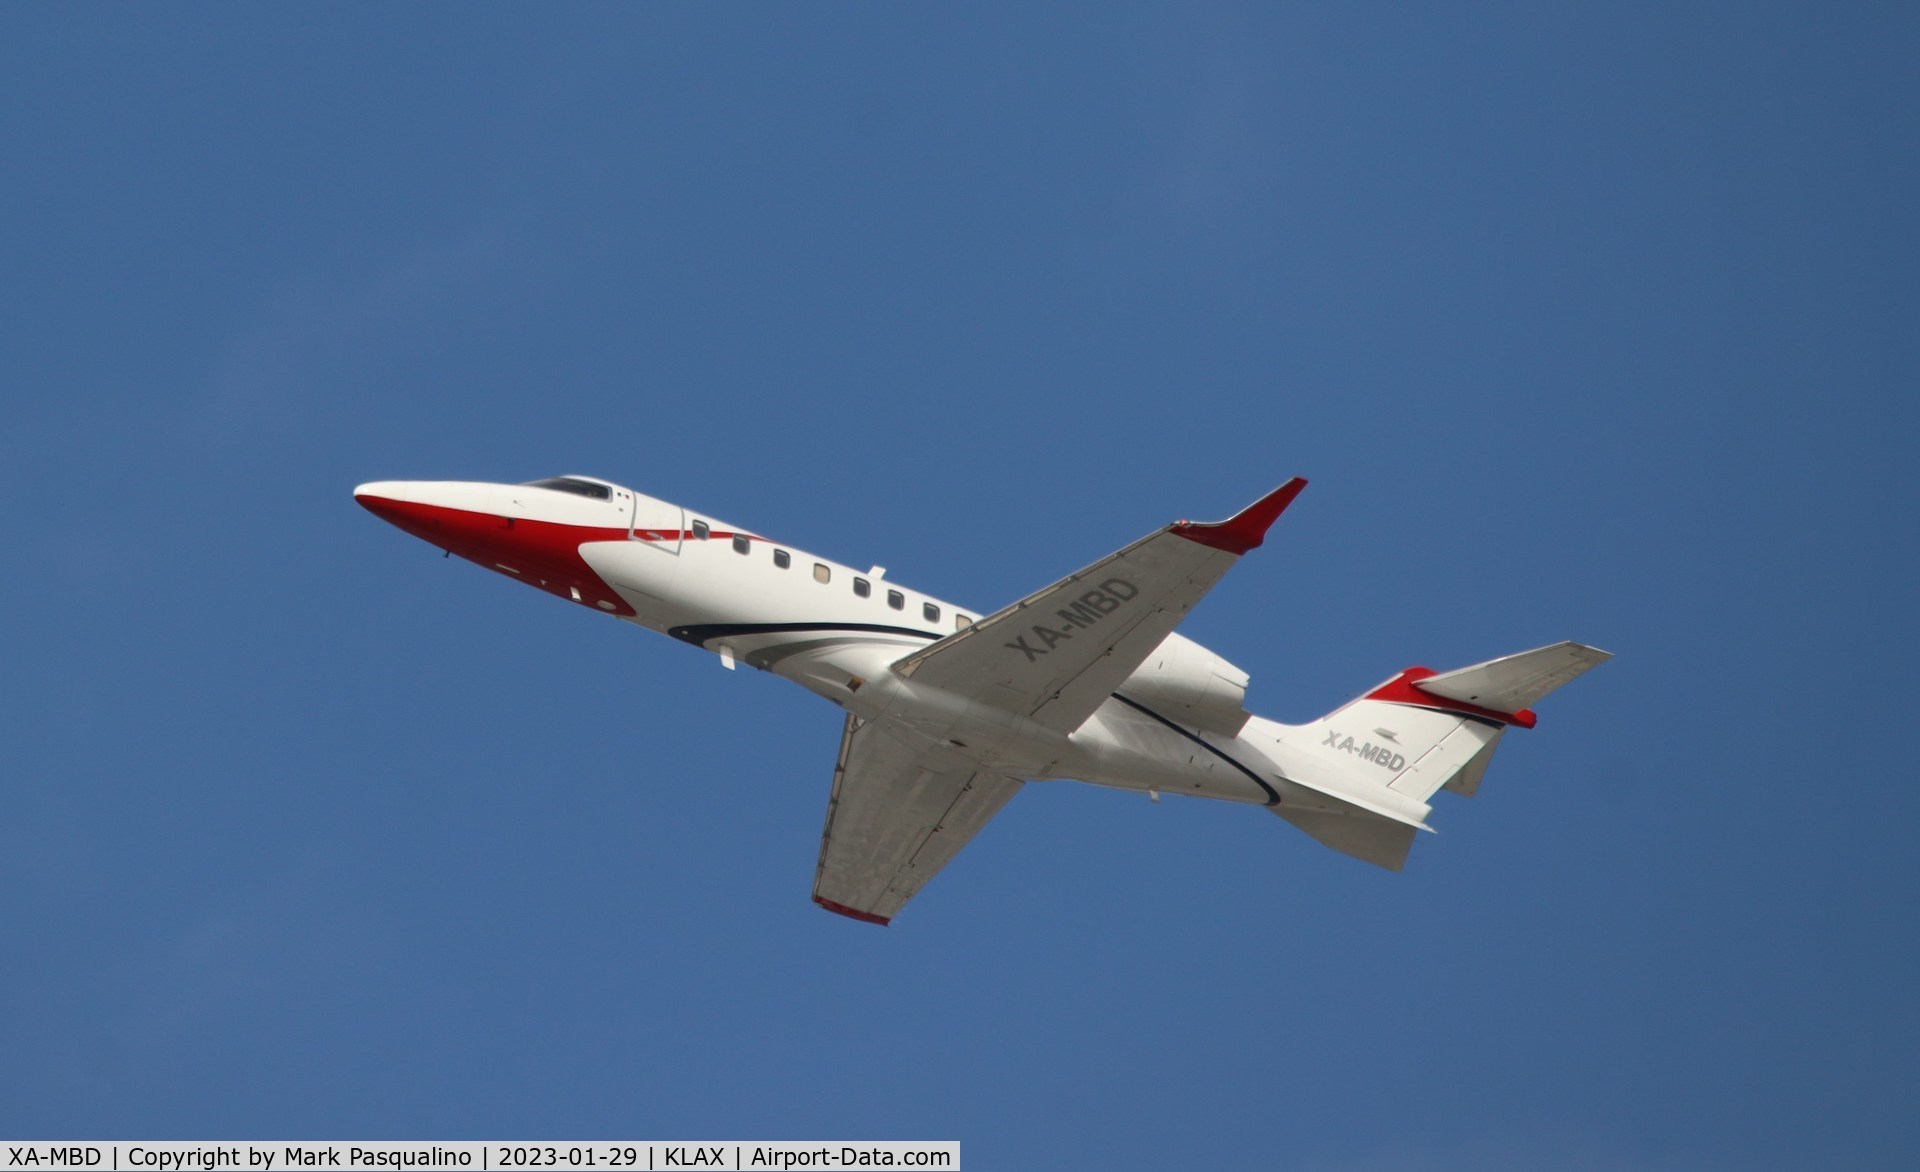 XA-MBD, 2014 Learjet 75 C/N 45-482, Learjet 75